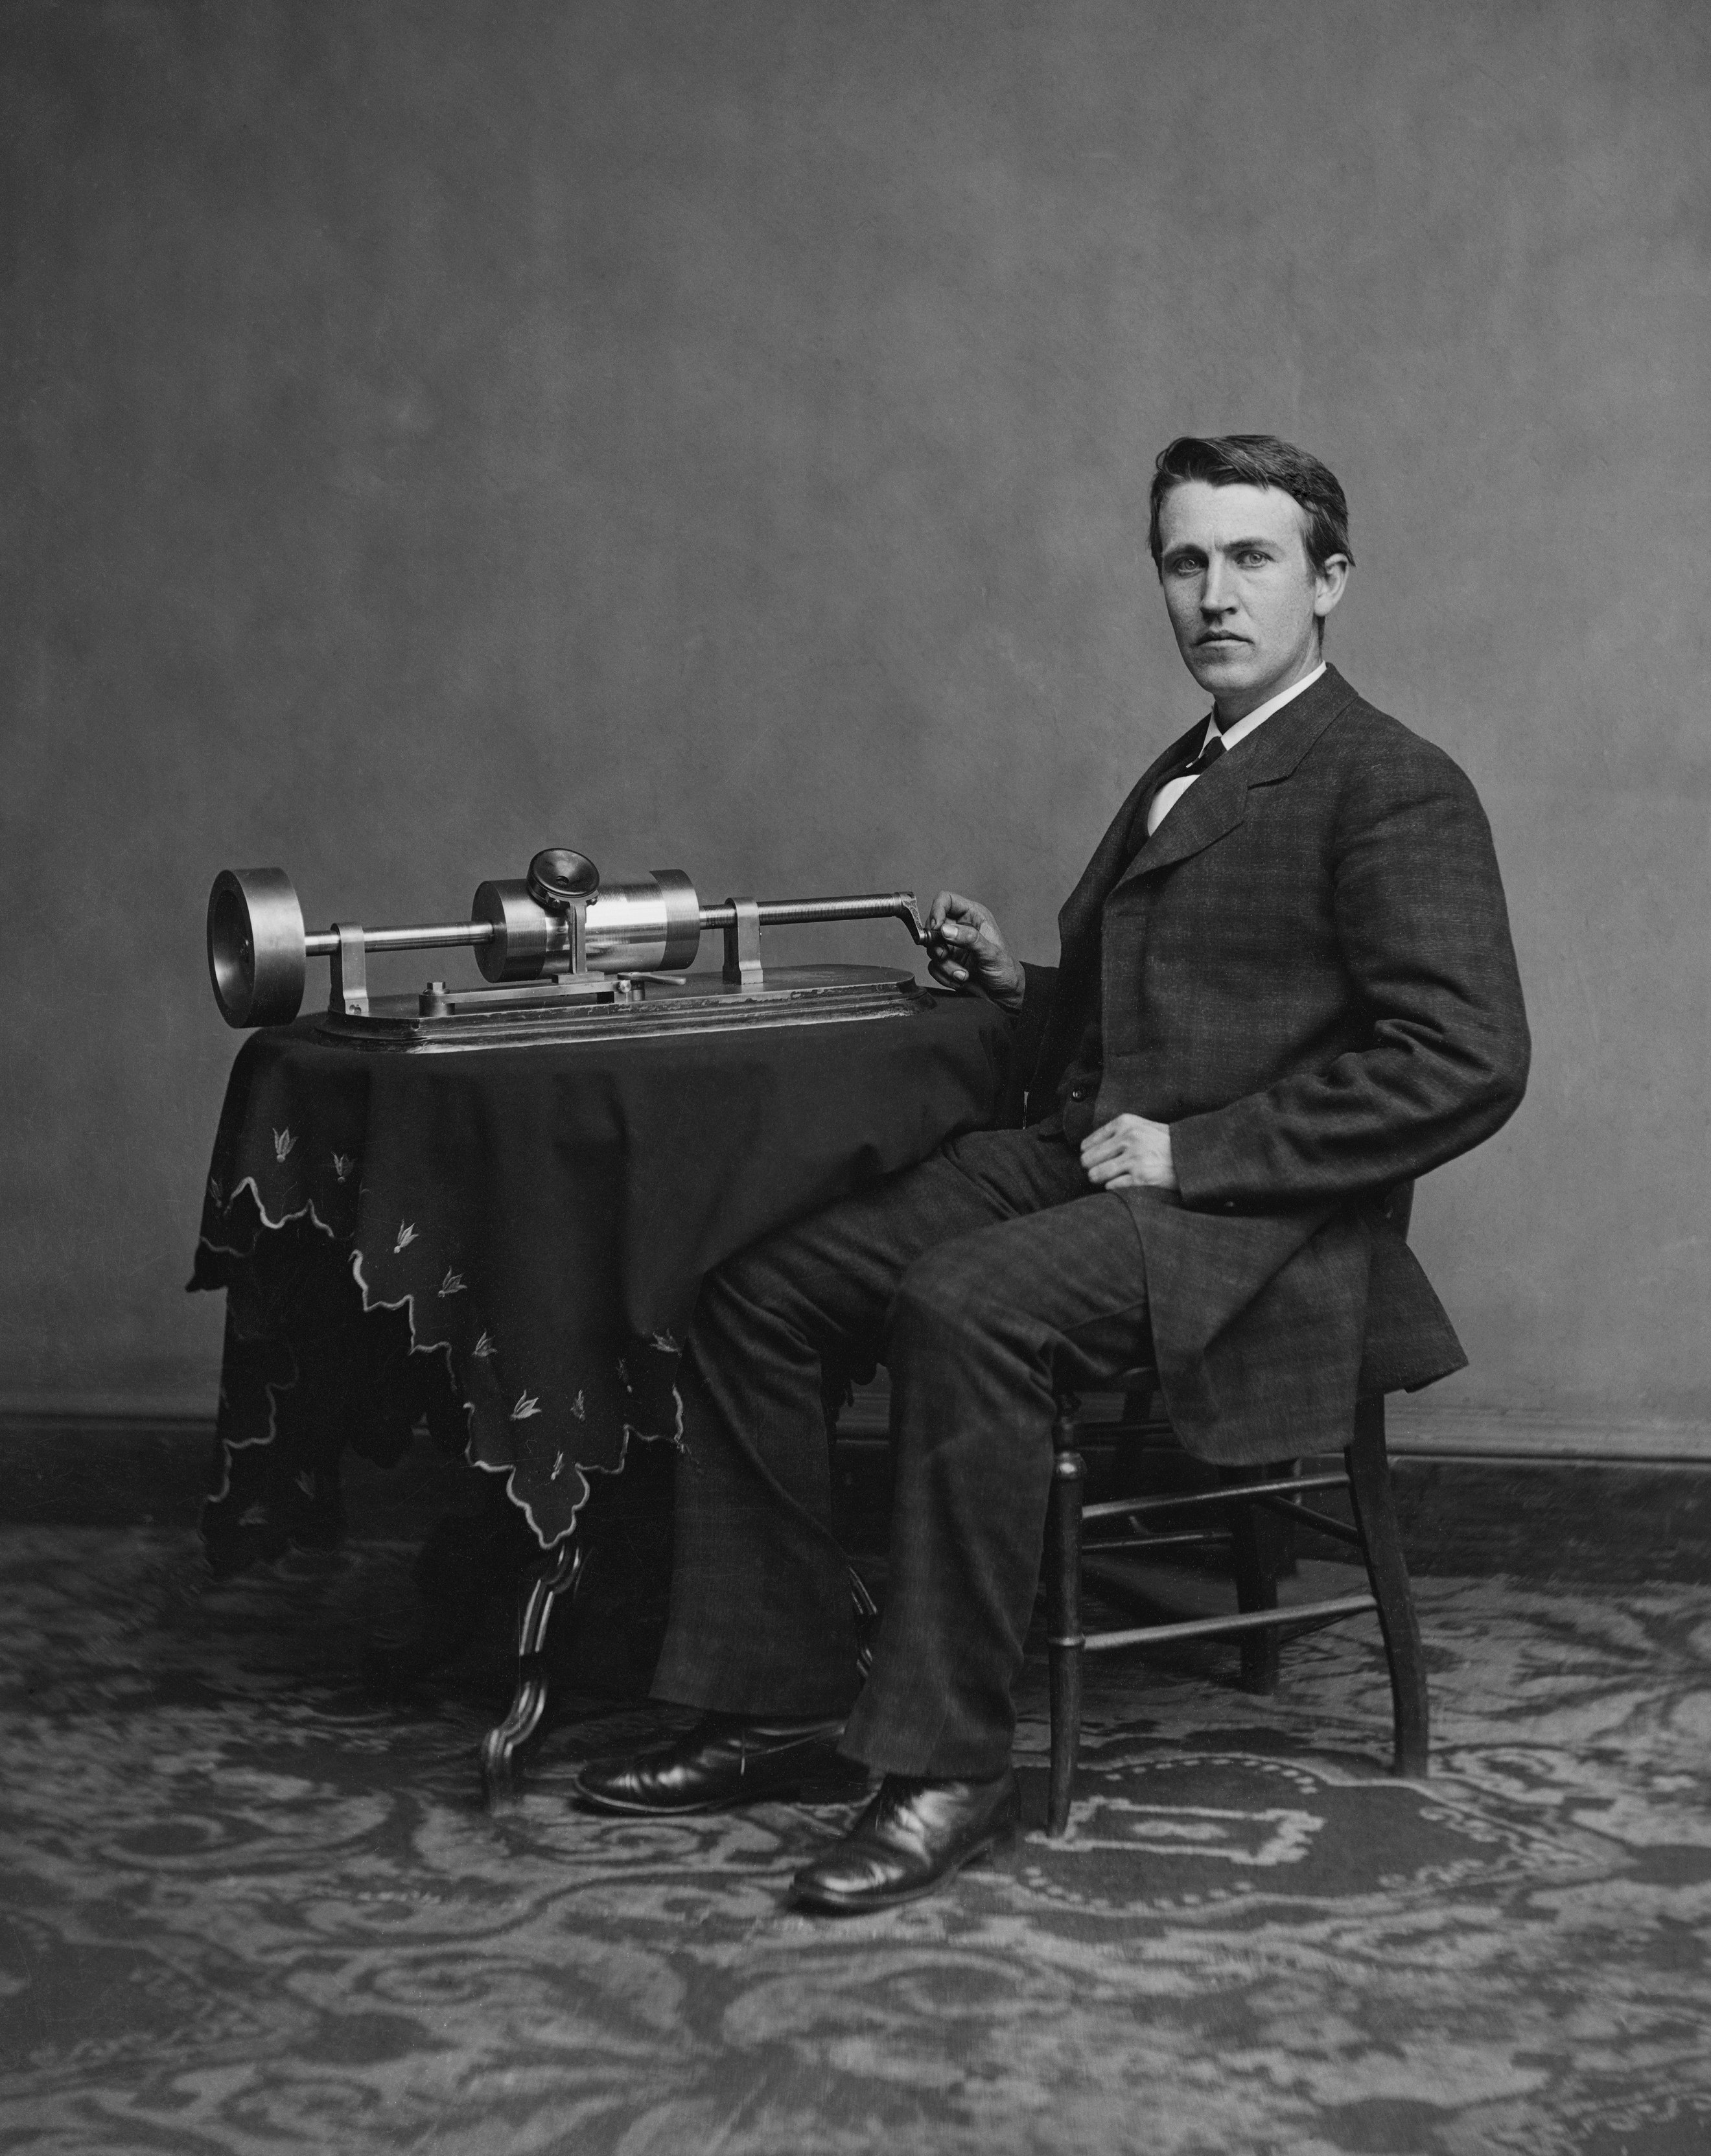 Thomas Edison inventa el fonógrafo, el primer aparato en reproducir sonidos